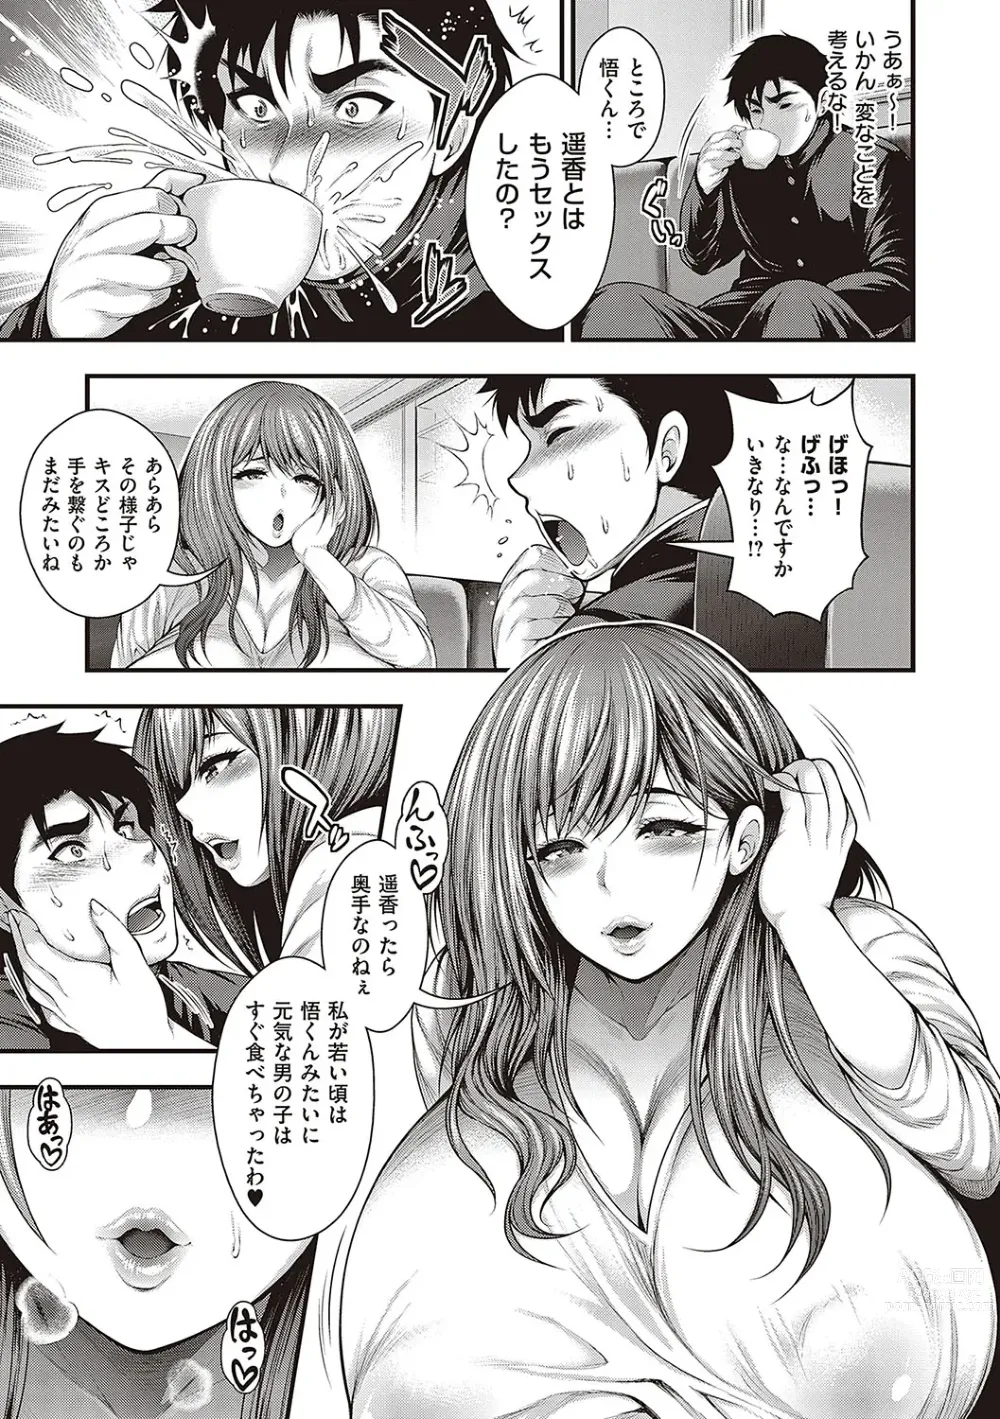 Page 8 of manga Arigatou, Kami Chichi.